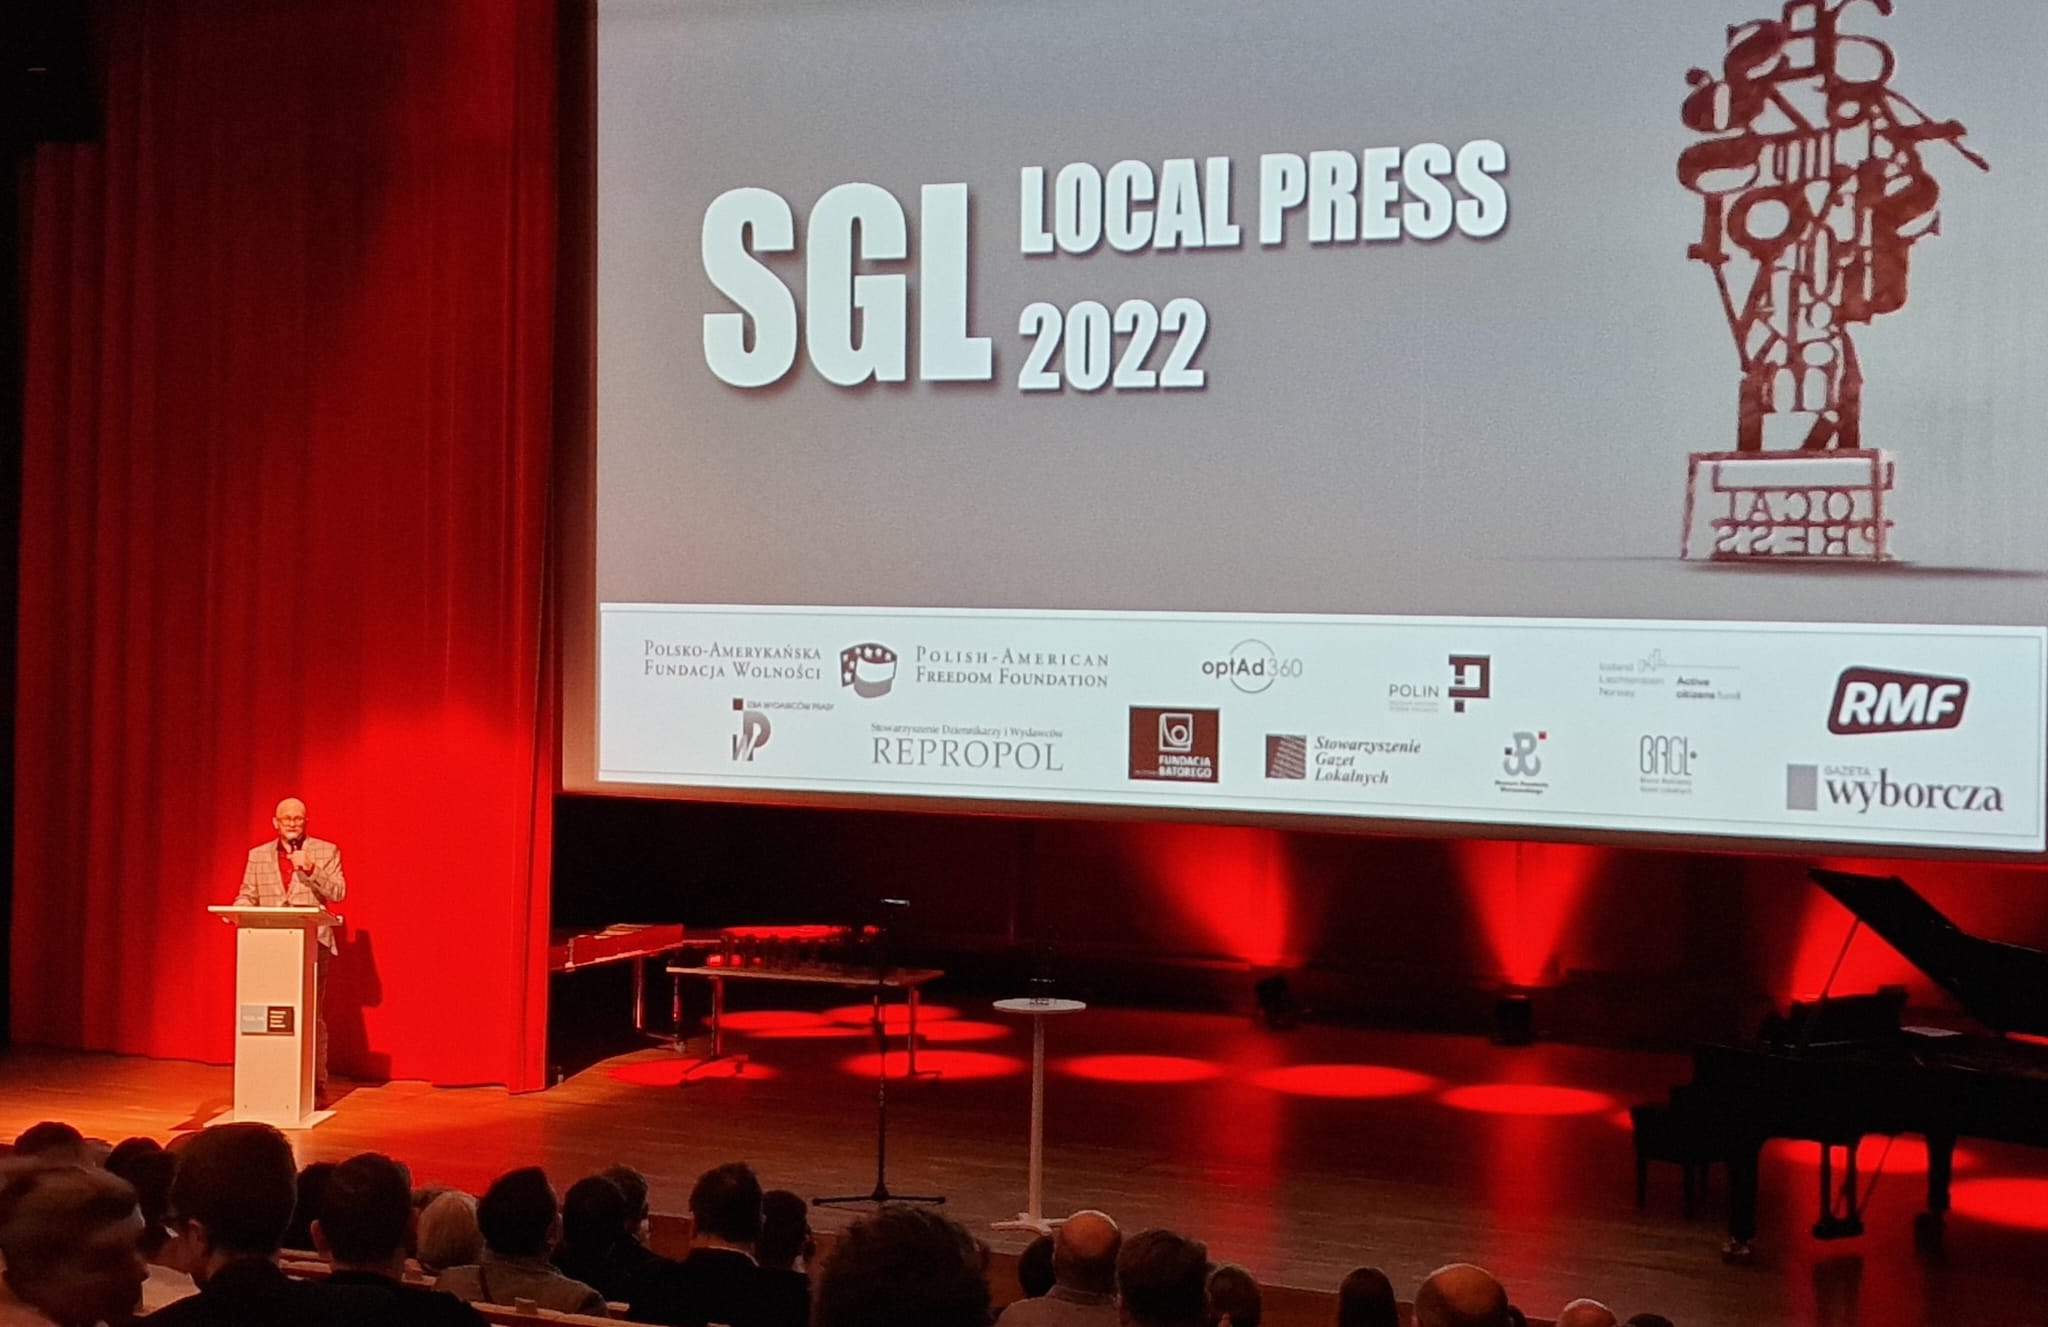 Konferencja informacyjna na gali SGL Local Press 2022